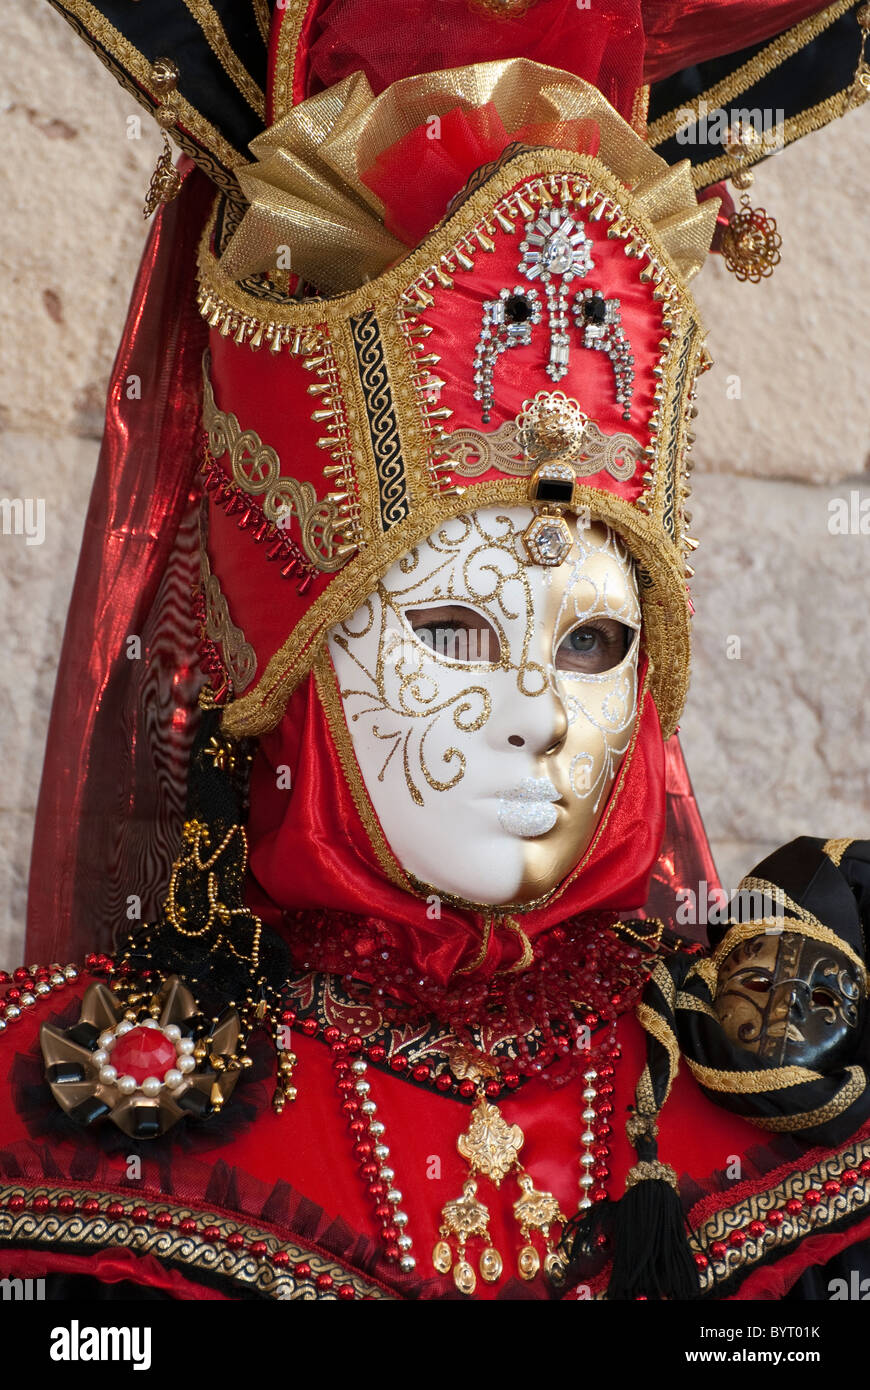 Solo máscara veneciana disfraz durante el carnaval Foto de stock